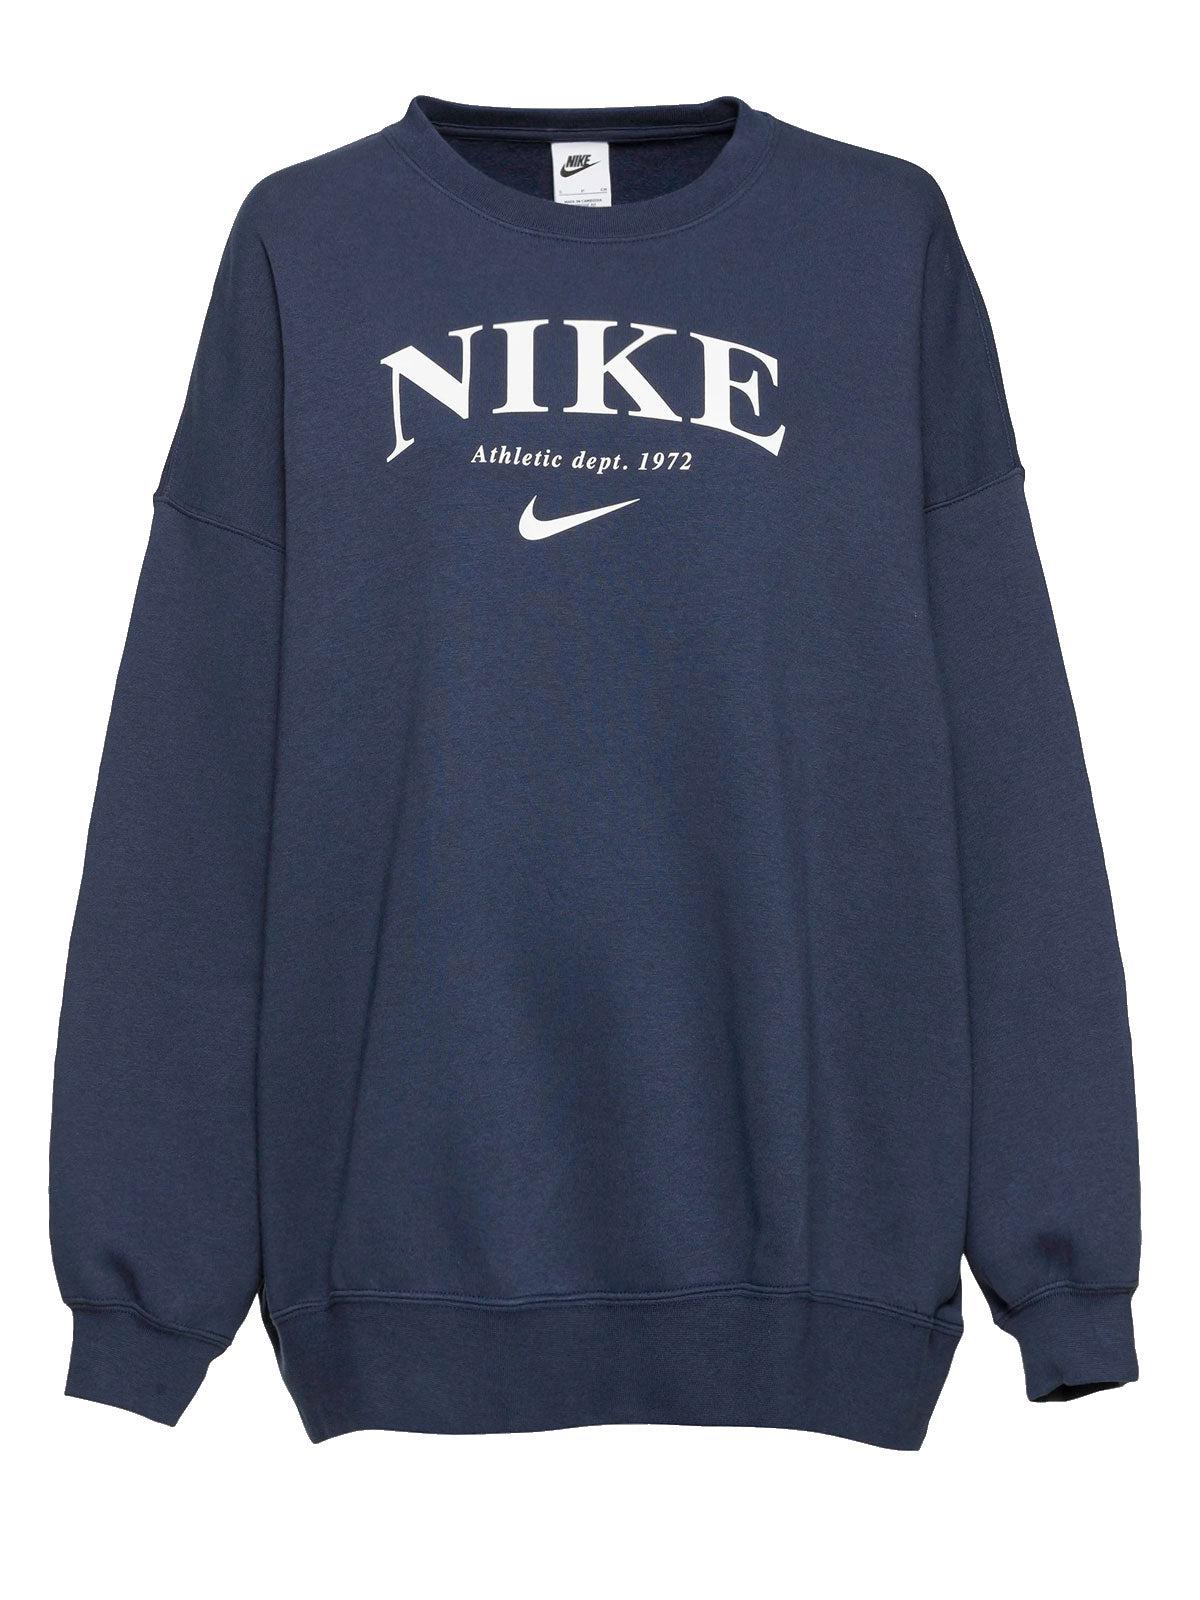 Nike Essentials Fleece Sweatshirt in Navy (Blue) | Lyst